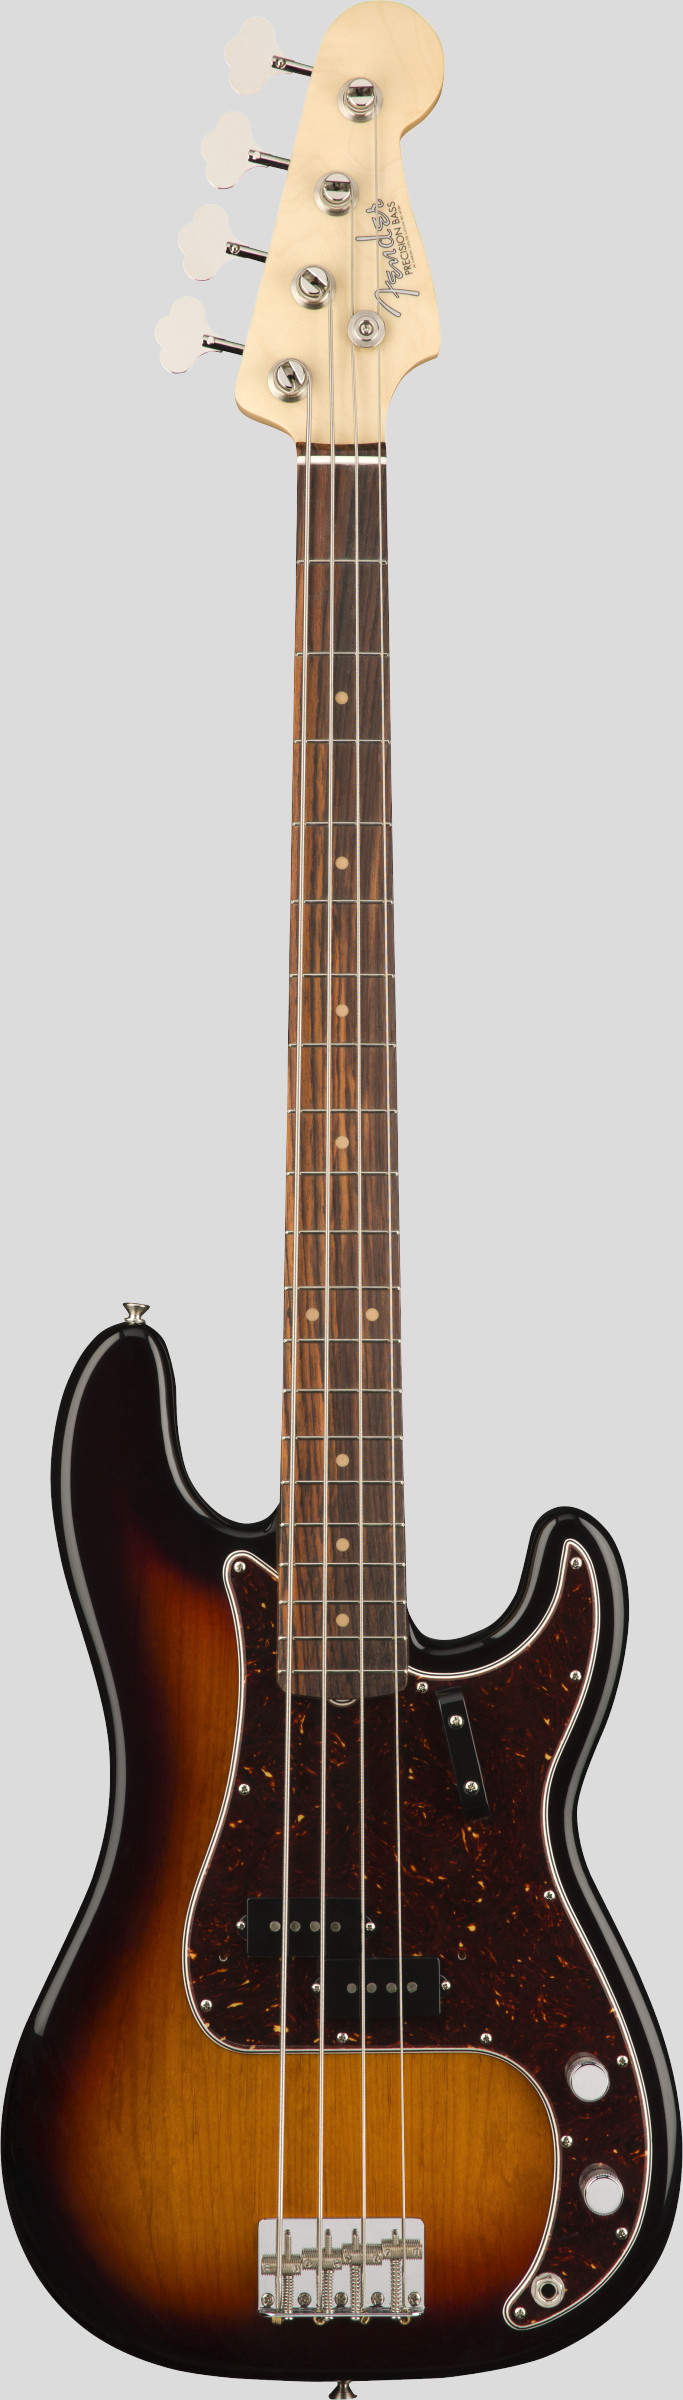 Fender American Original 60 Precision Bass 3-Color Sunburst (custodia Fender G&G Deluxe Hardshell Case) 0190120800 Made in Usa